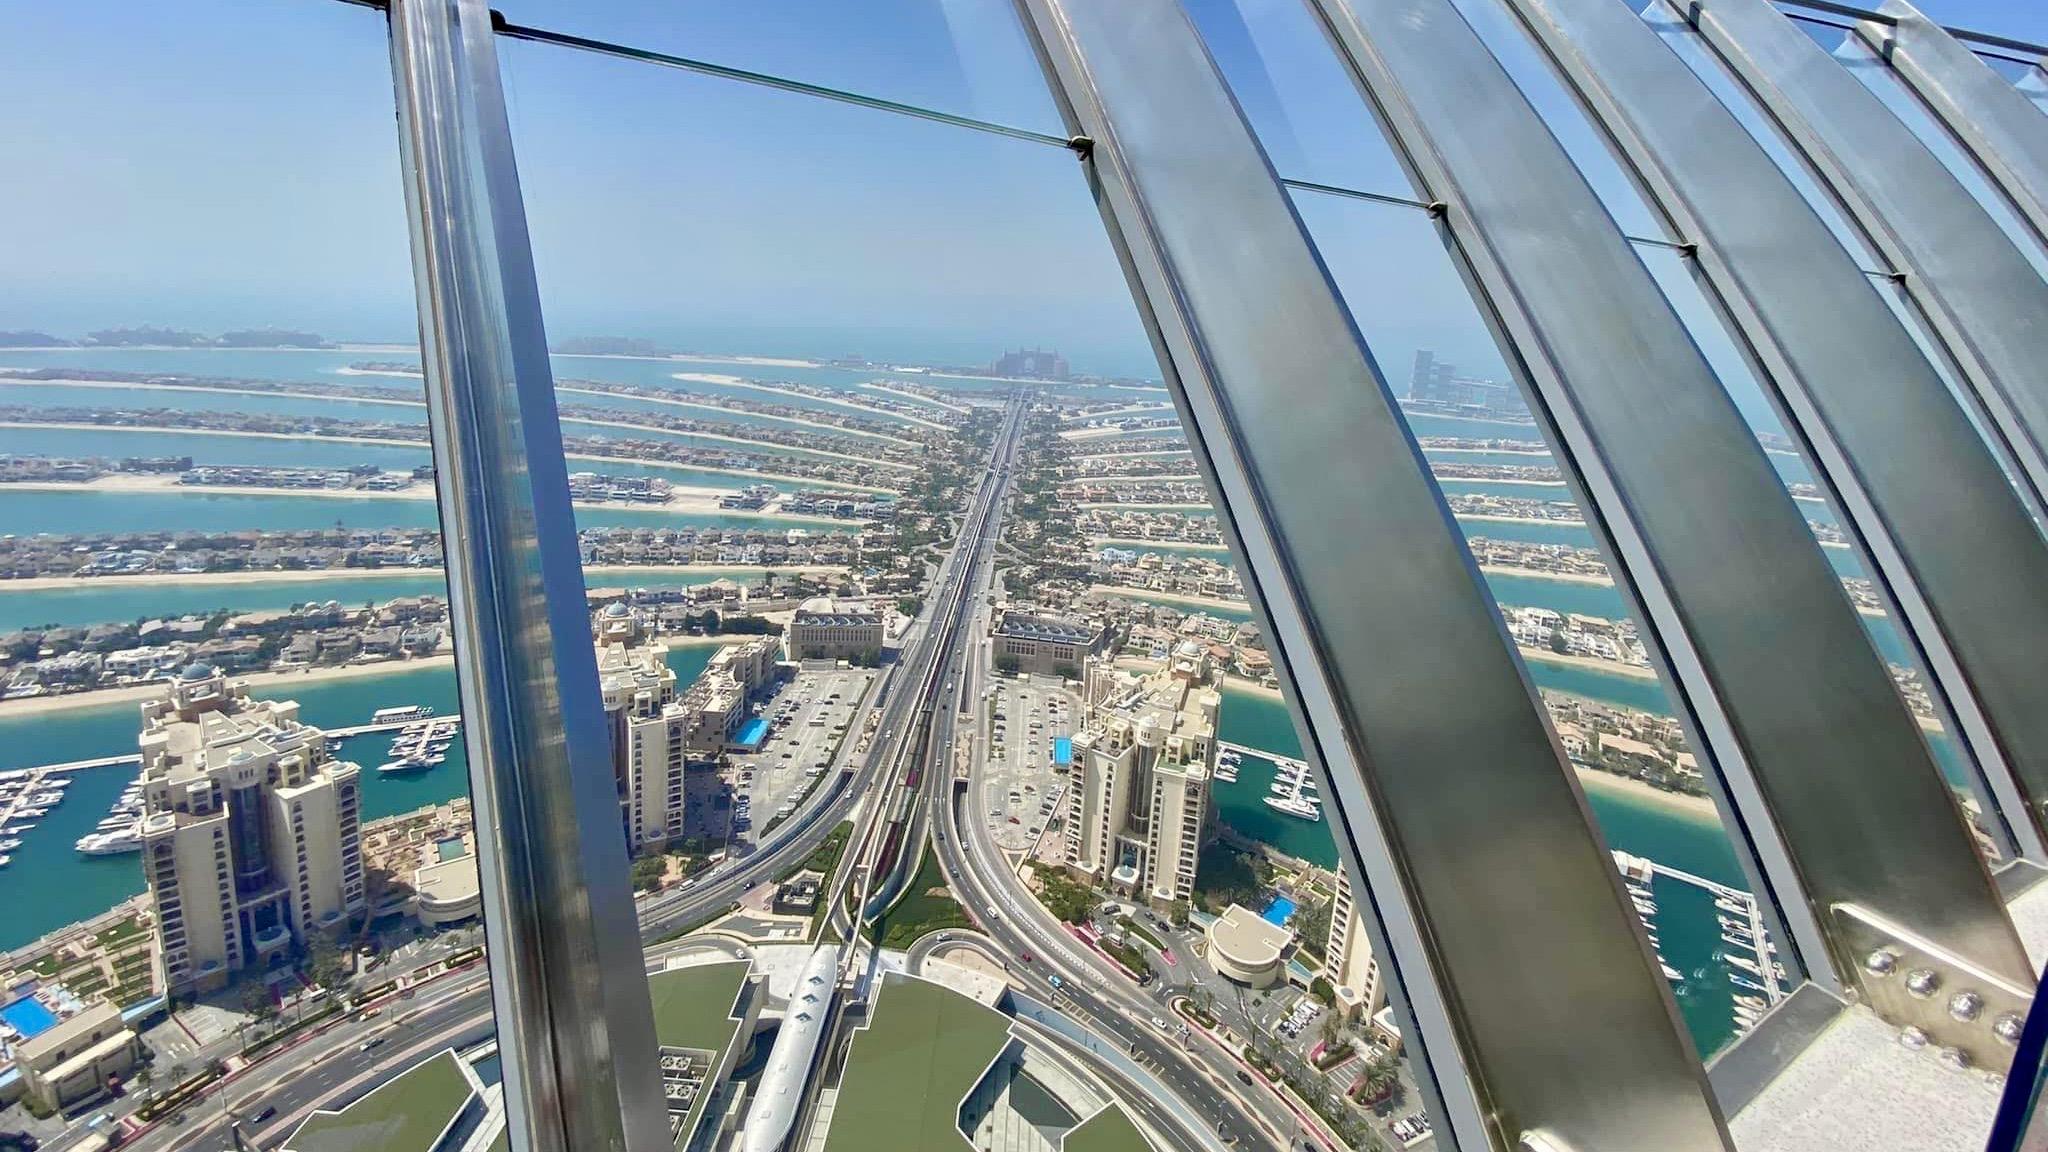 The view at the Palm Jumeirah - Dubai